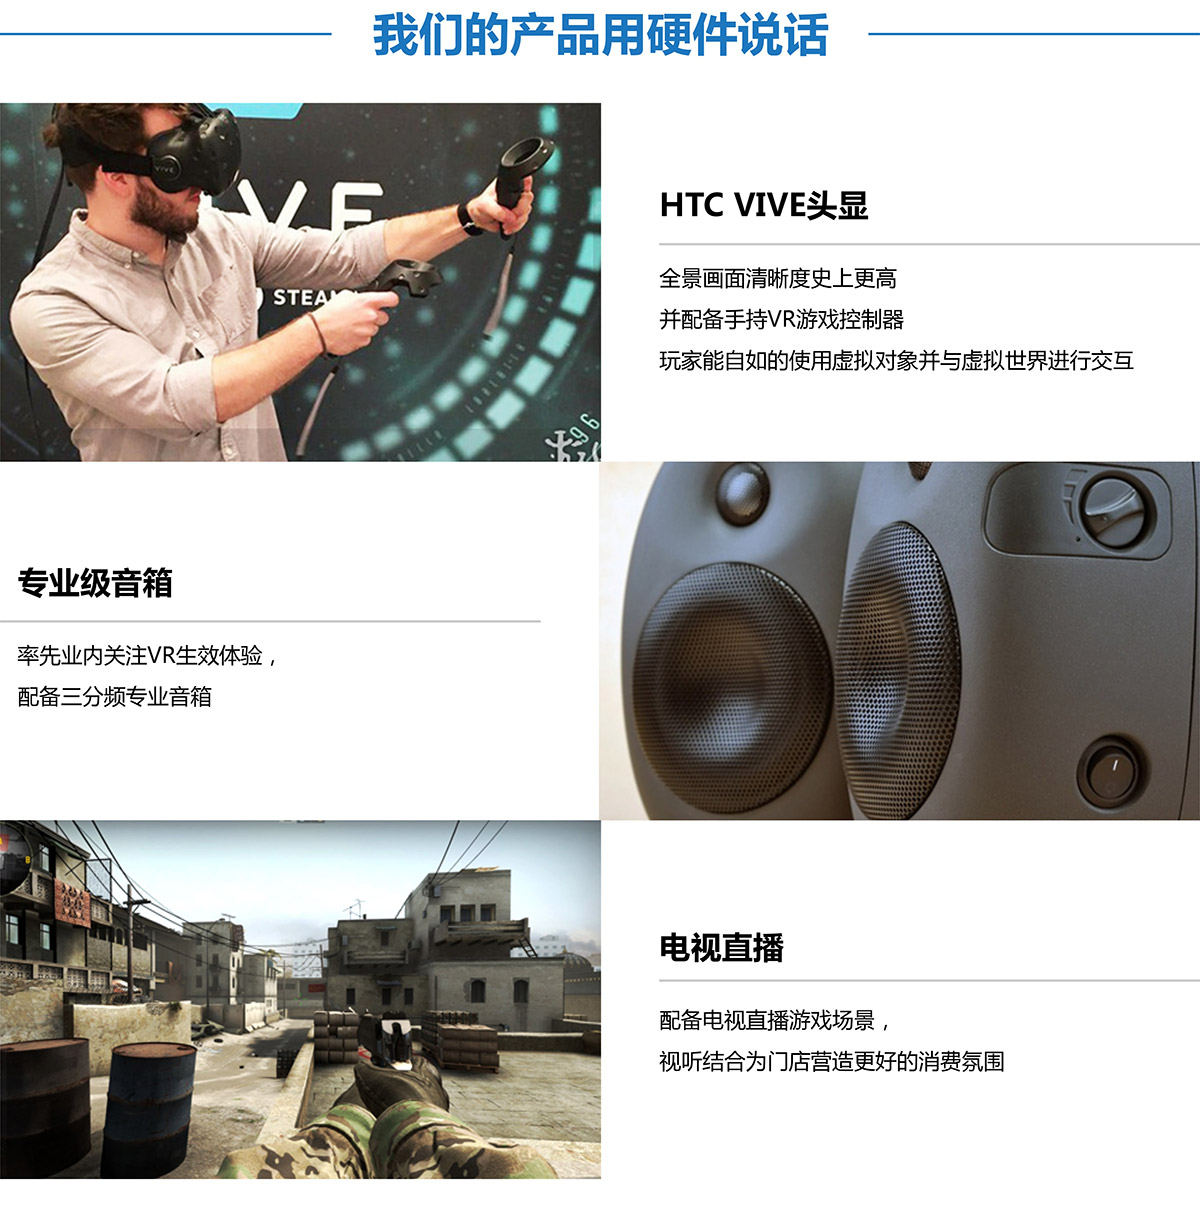 互动电影VR探索用硬件说话.jpg